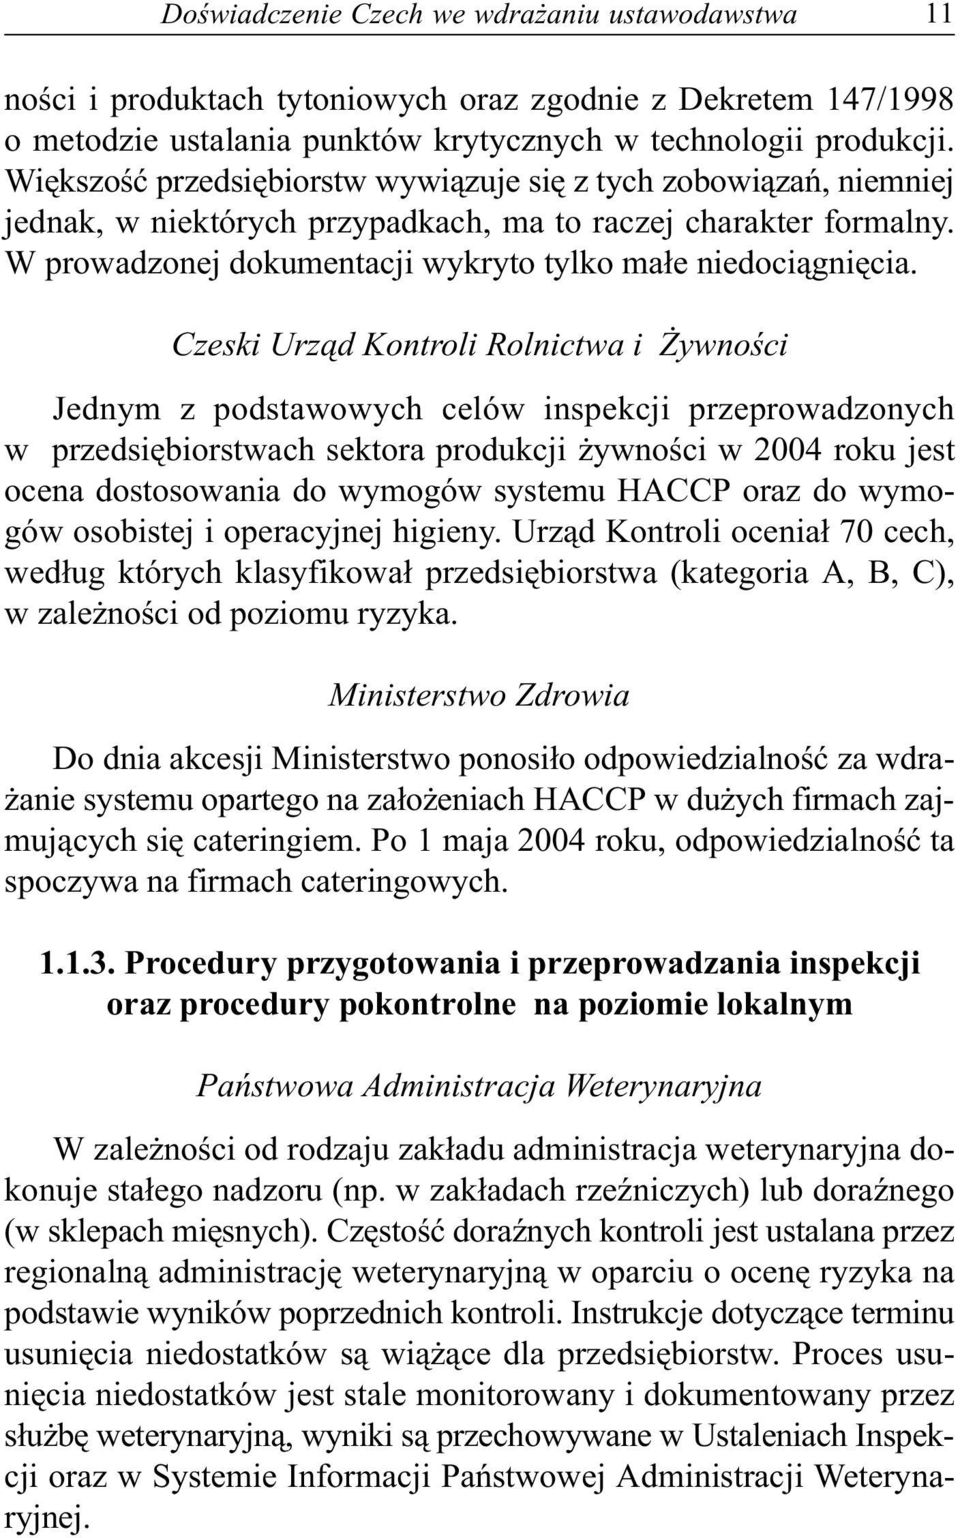 Czeski Urz¹d Kontroli Rolnictwa i ywnoœci Jednym z podstawowych celów inspekcji przeprowadzonych w przedsiêbiorstwach sektora produkcji ywnoœci w 2004 roku jest ocena dostosowania do wymogów systemu